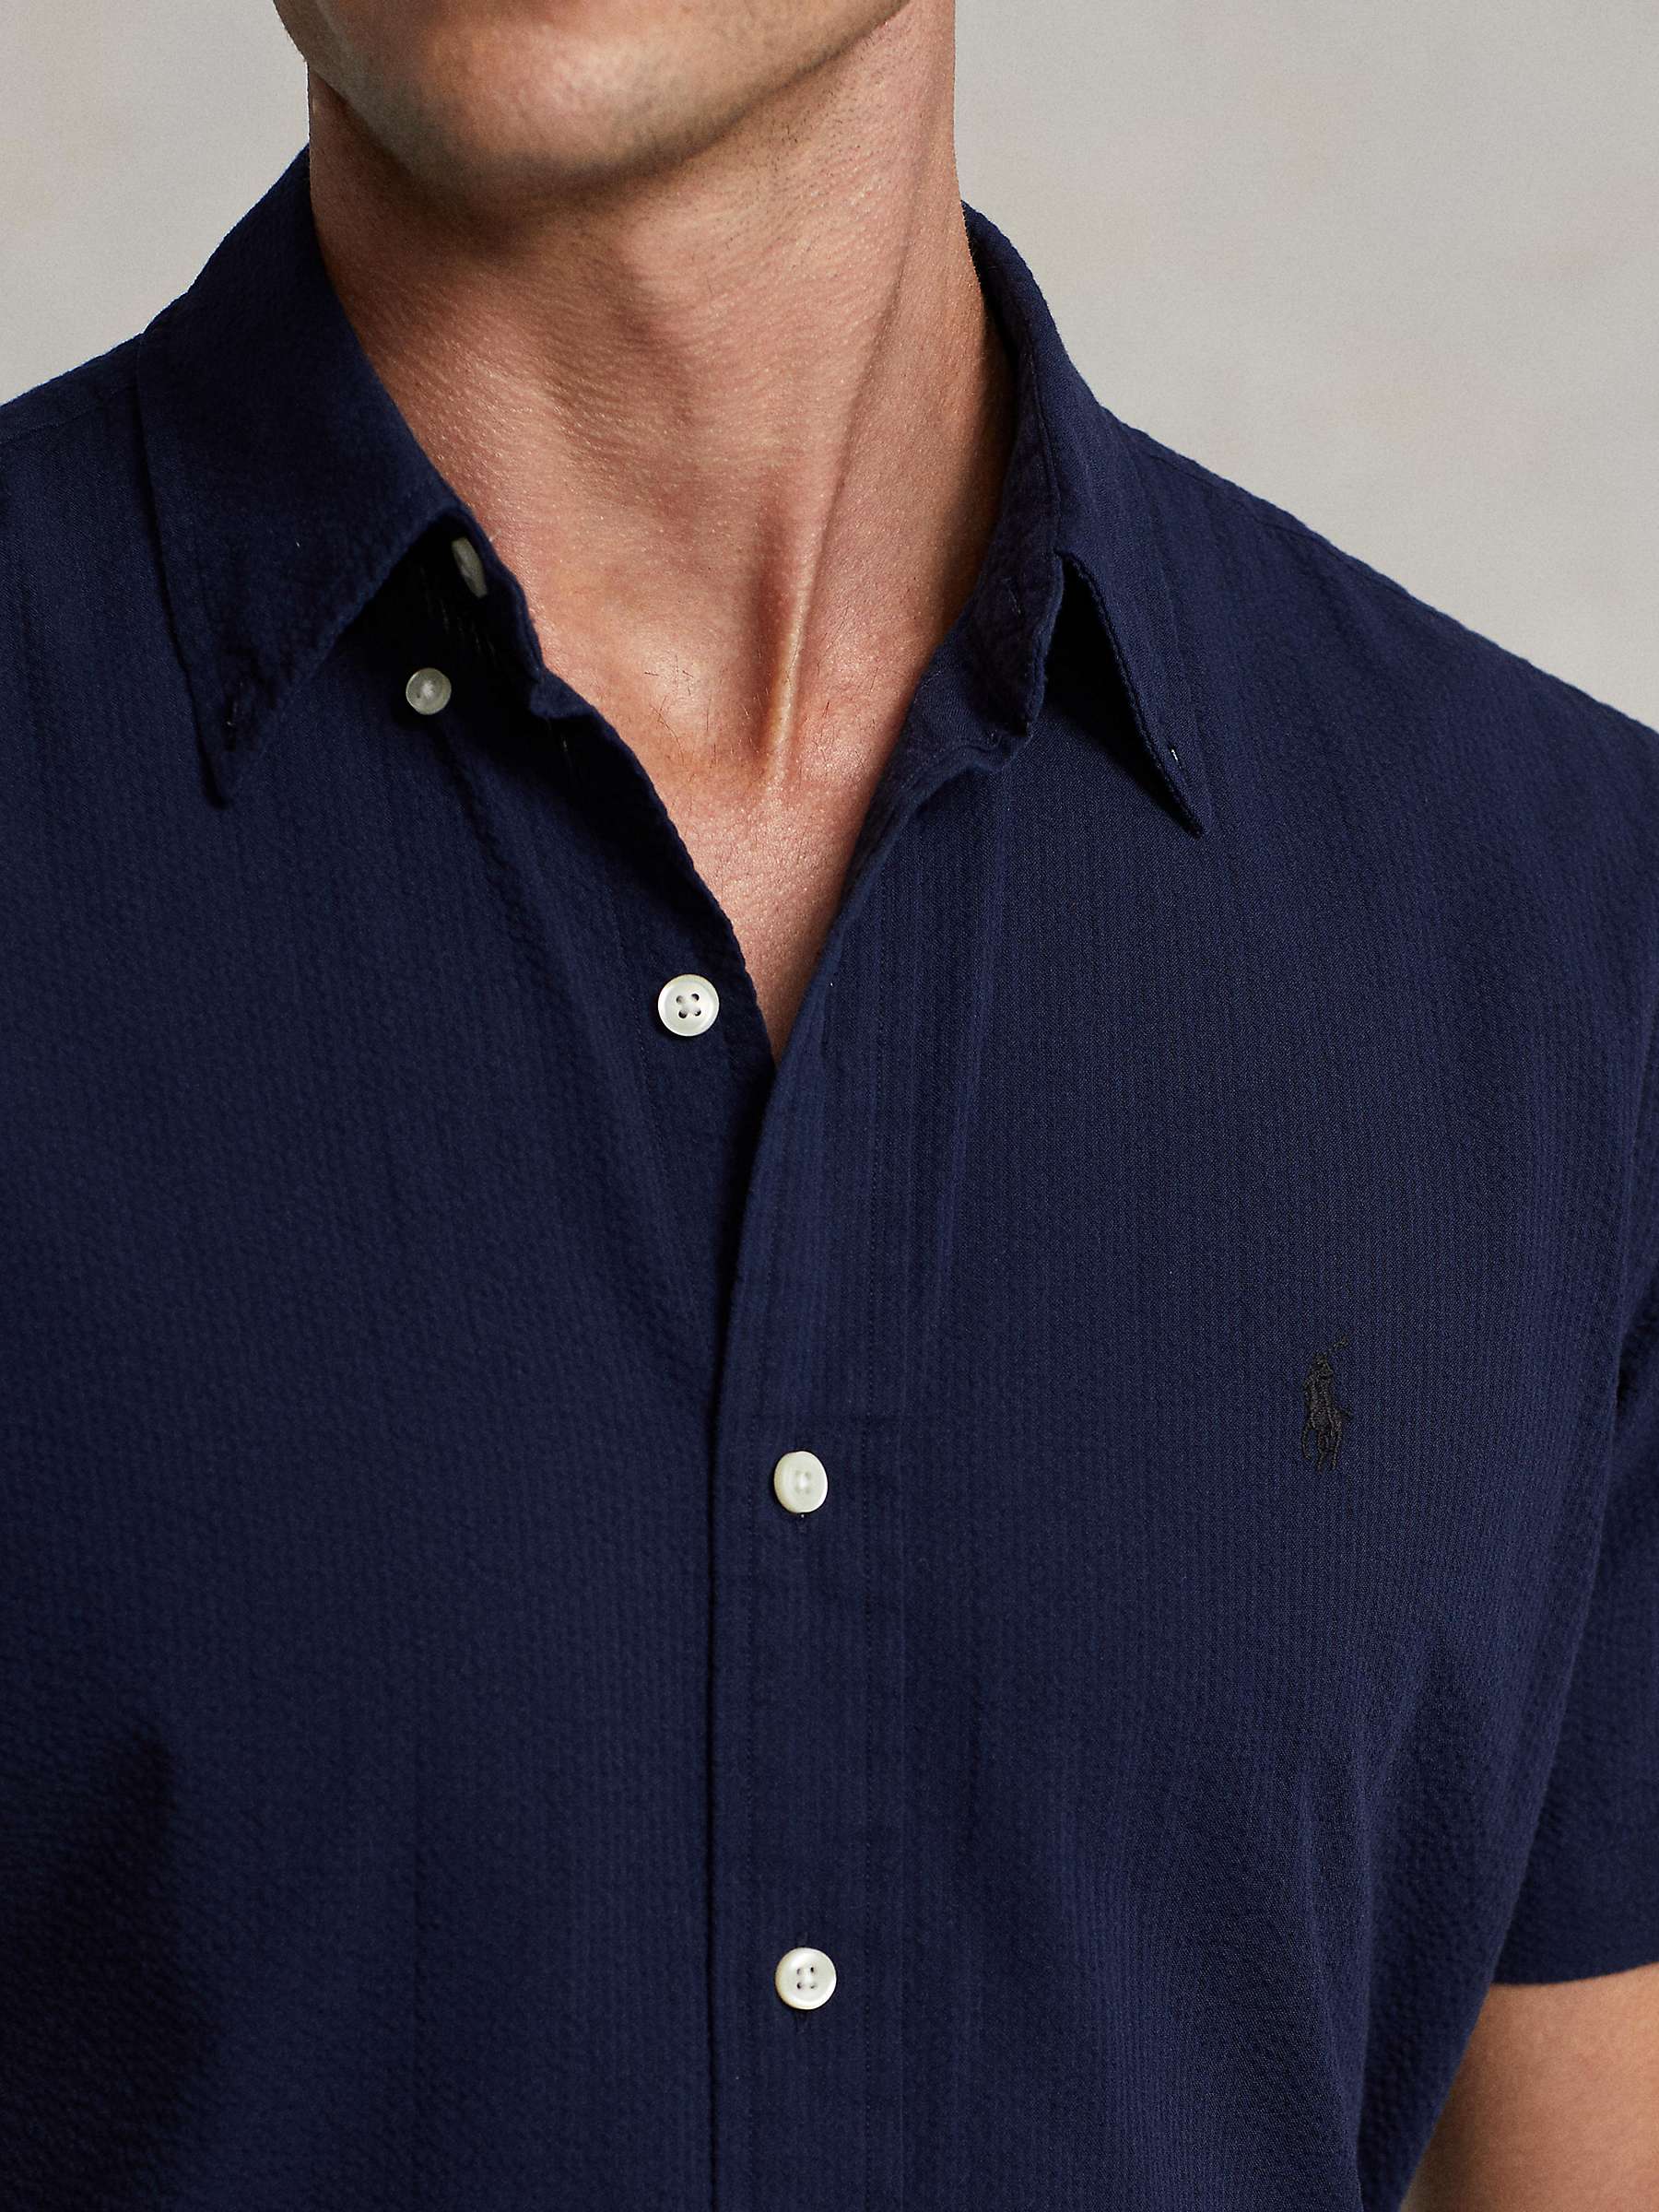 Buy Ralph Lauren Custom Fit Seersucker Shirt, Navy Online at johnlewis.com